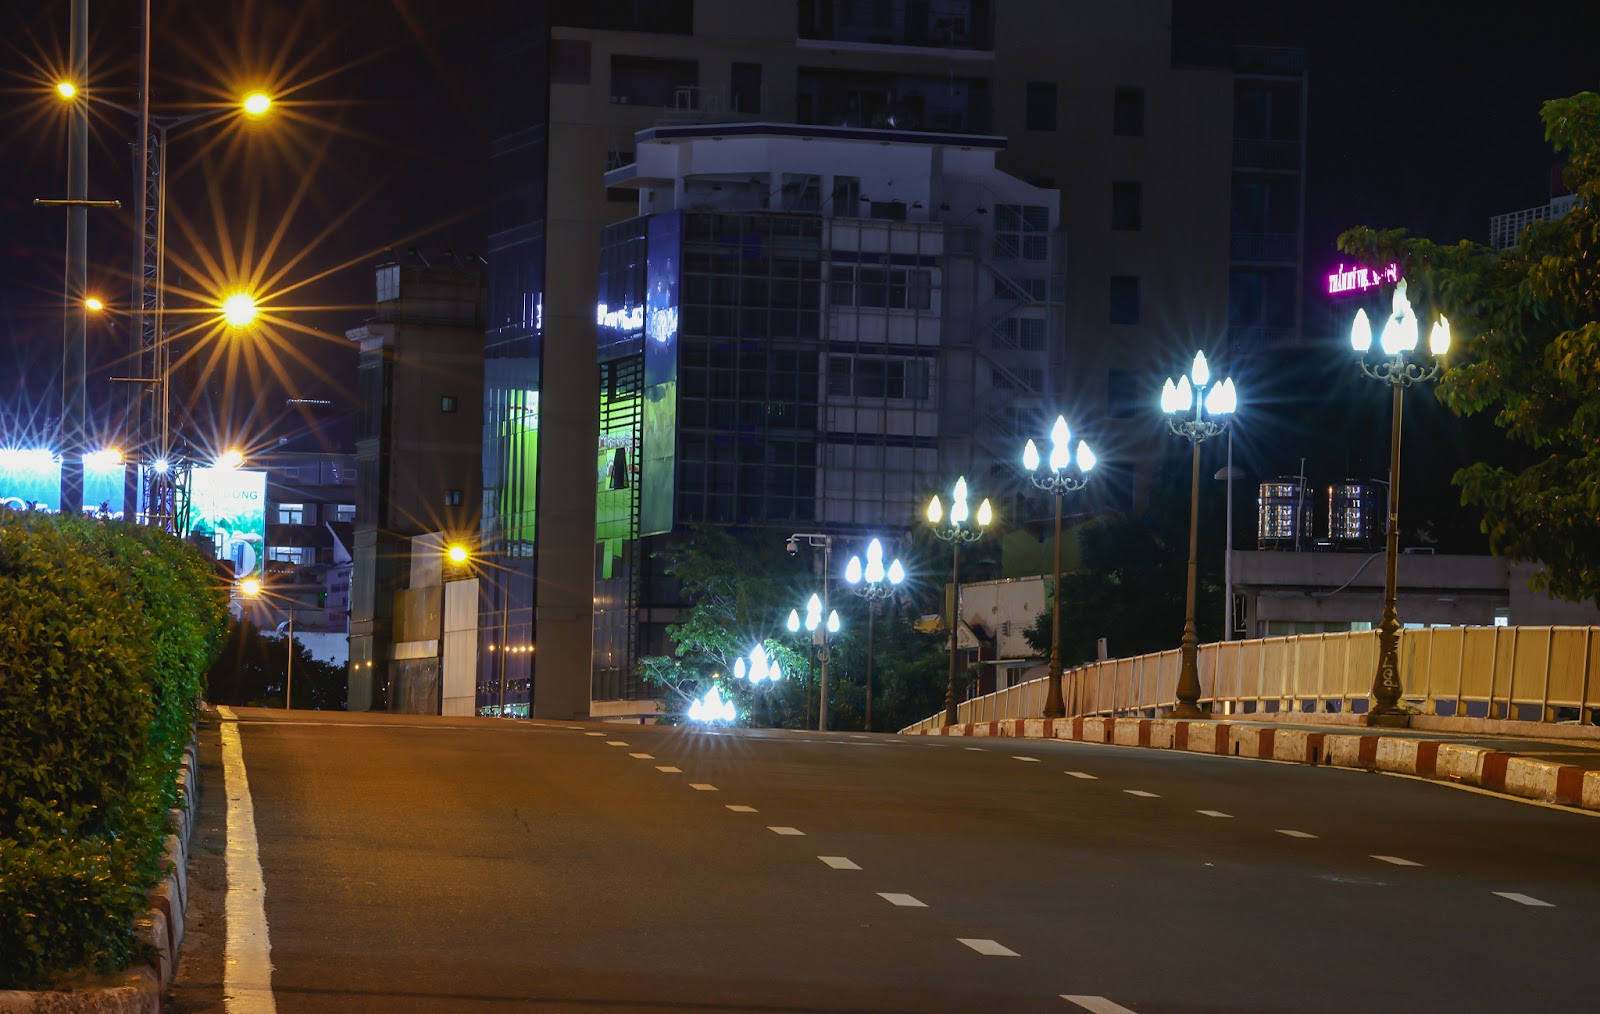 “Bổ túc” đường phố Sài Gòn lúc lên đèn dành cho người ở nhà lâu quá - 10